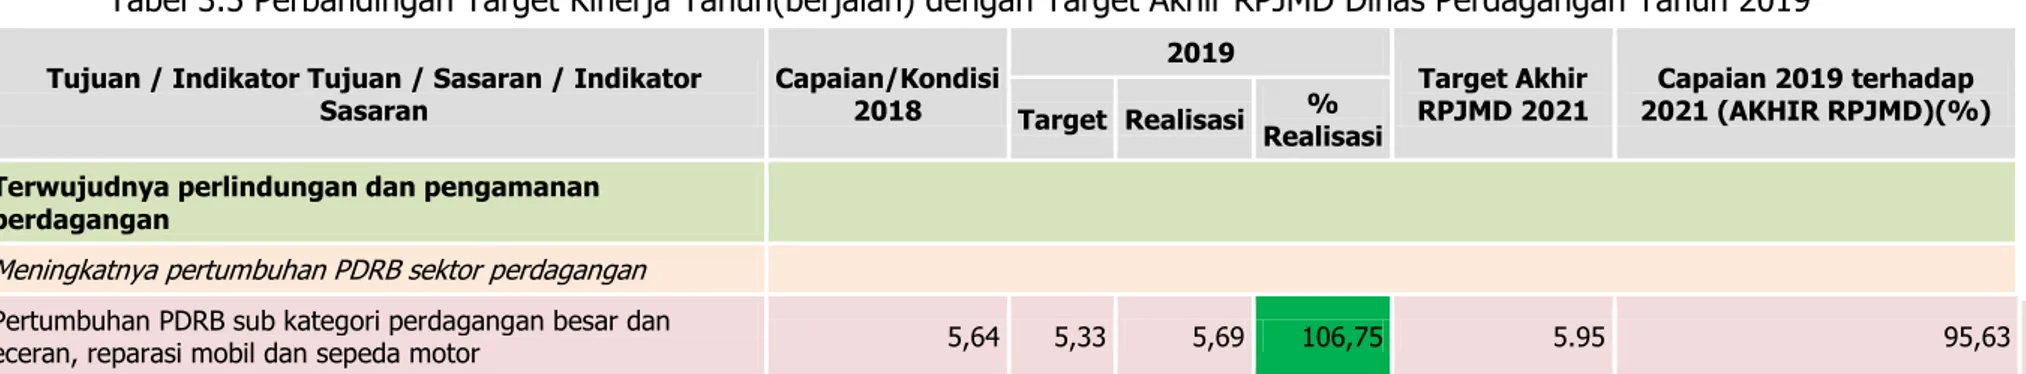 Tabel 3.5 Perbandingan Target Kinerja Tahun(berjalan) dengan Target Akhir RPJMD Dinas Perdagangan Tahun 2019 